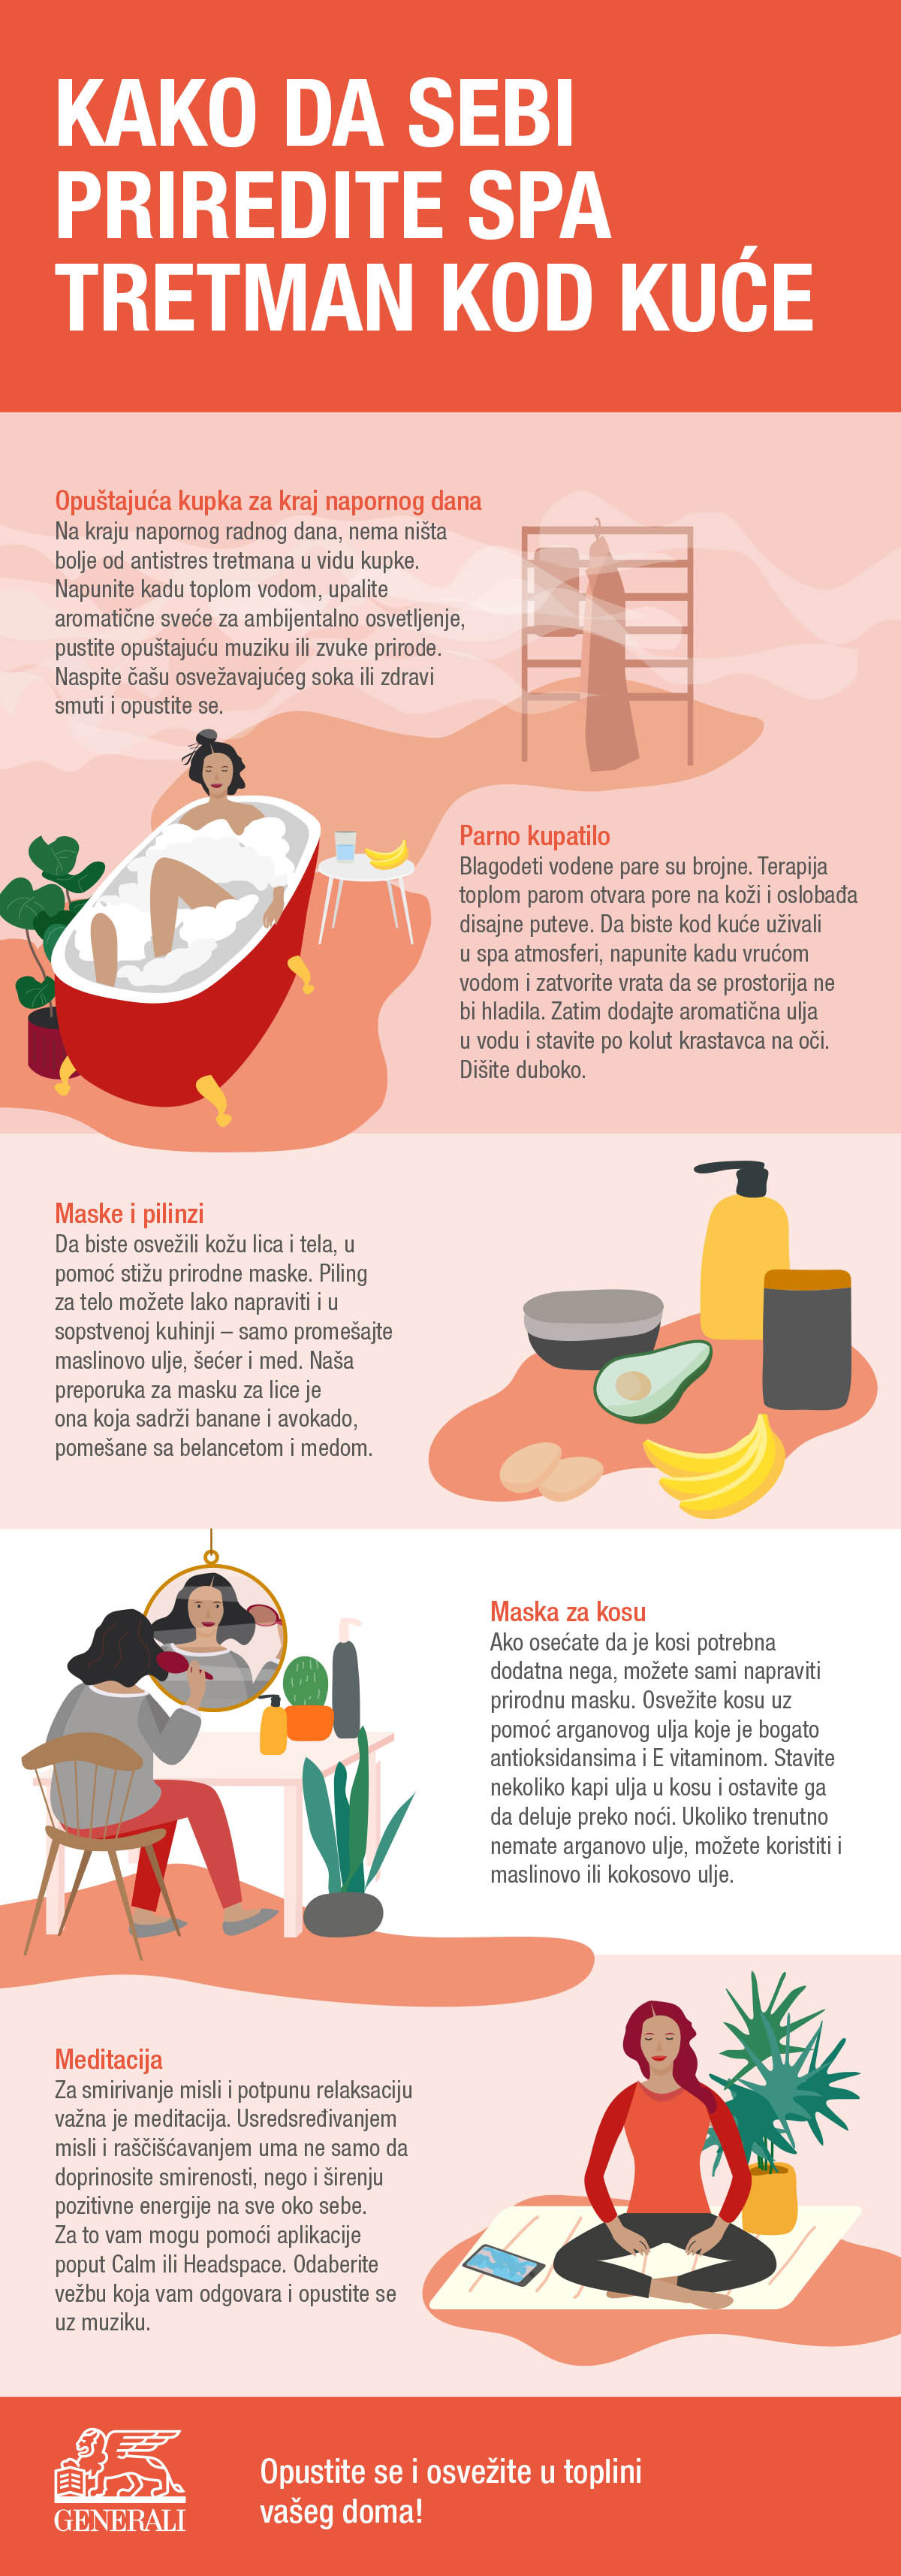 Infografik - Kako da sebi priredite spa tretman kod kuće